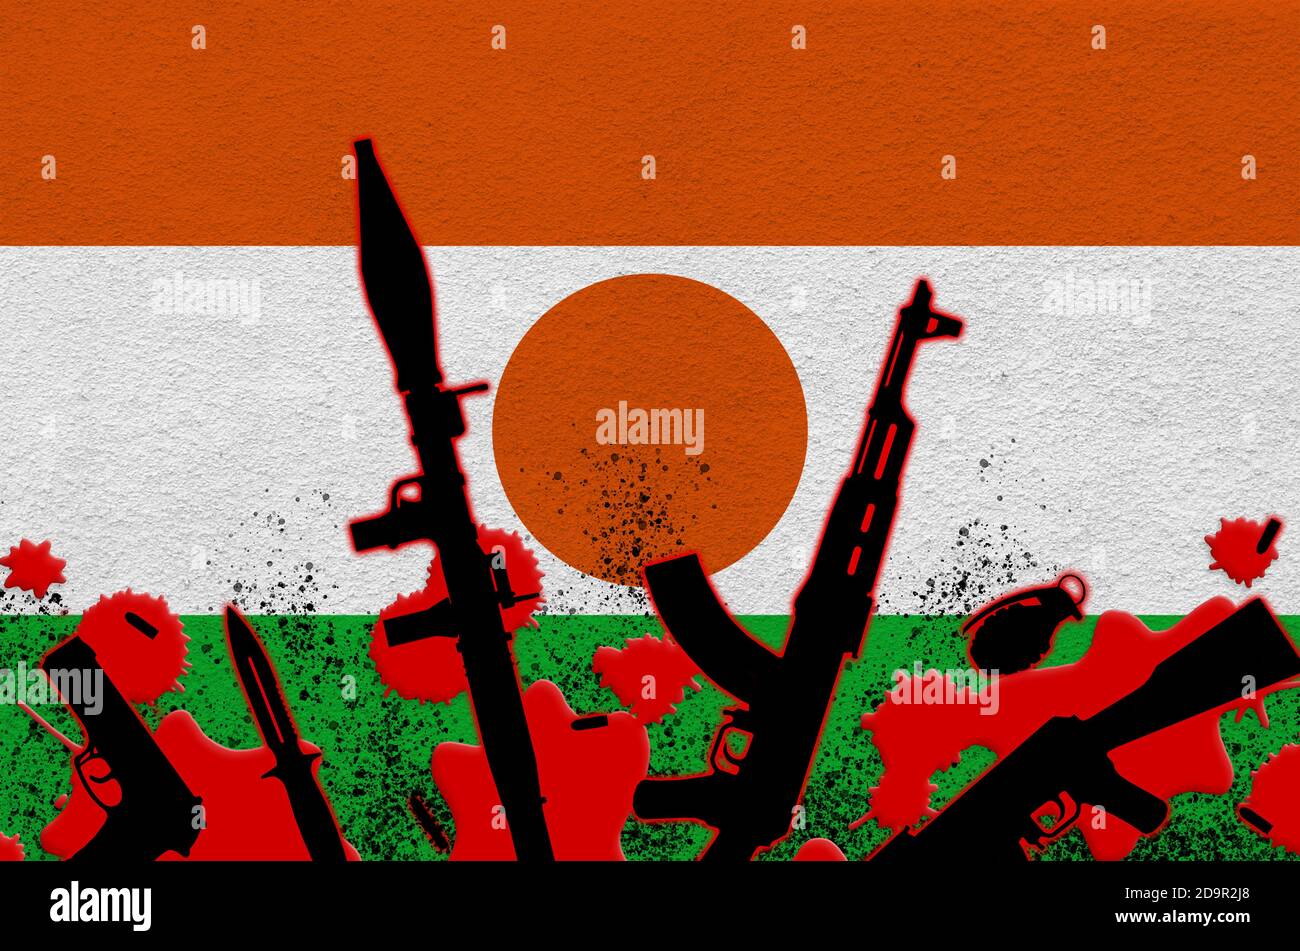 Drapeau du Niger et diverses armes dans le sang rouge. Concept d'attaque terroriste ou d'opérations militaires avec un résultat mortel. Trafic d'armes Banque D'Images